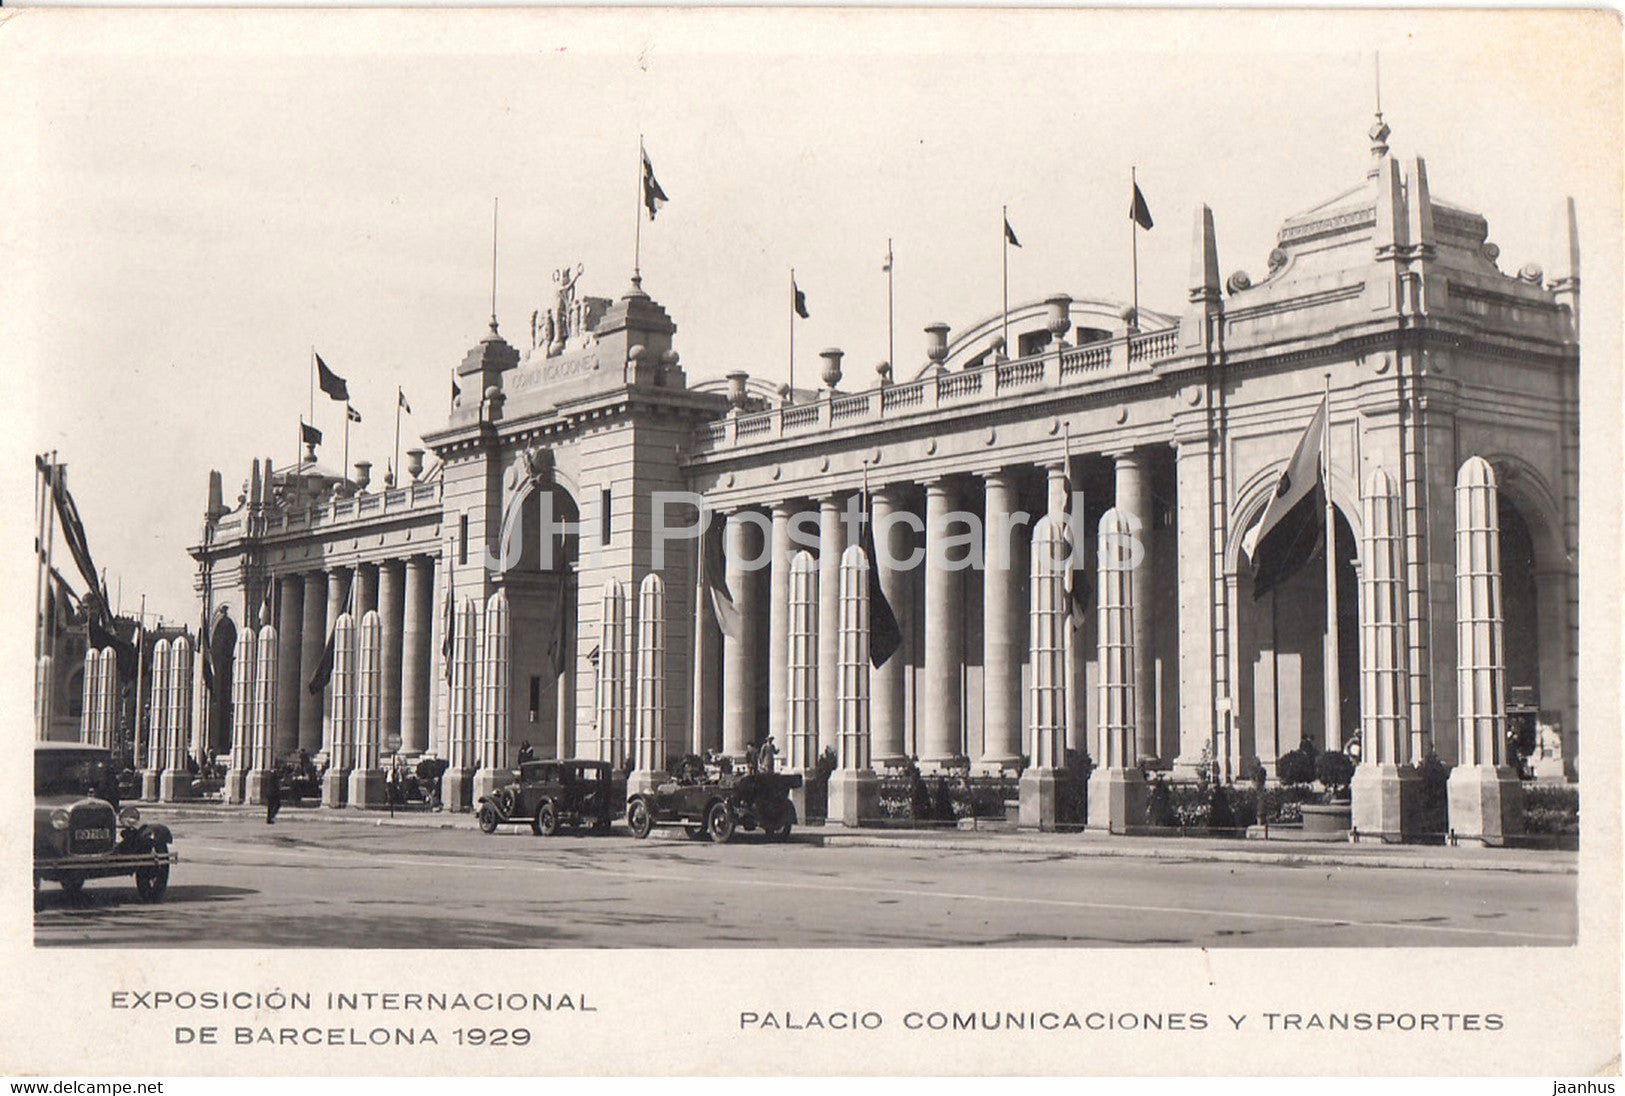 Exposicion Internacional de Barcelona 1929 - Palacio Comunicaciones y Transportes - car - old postcard - Spain - unused - JH Postcards